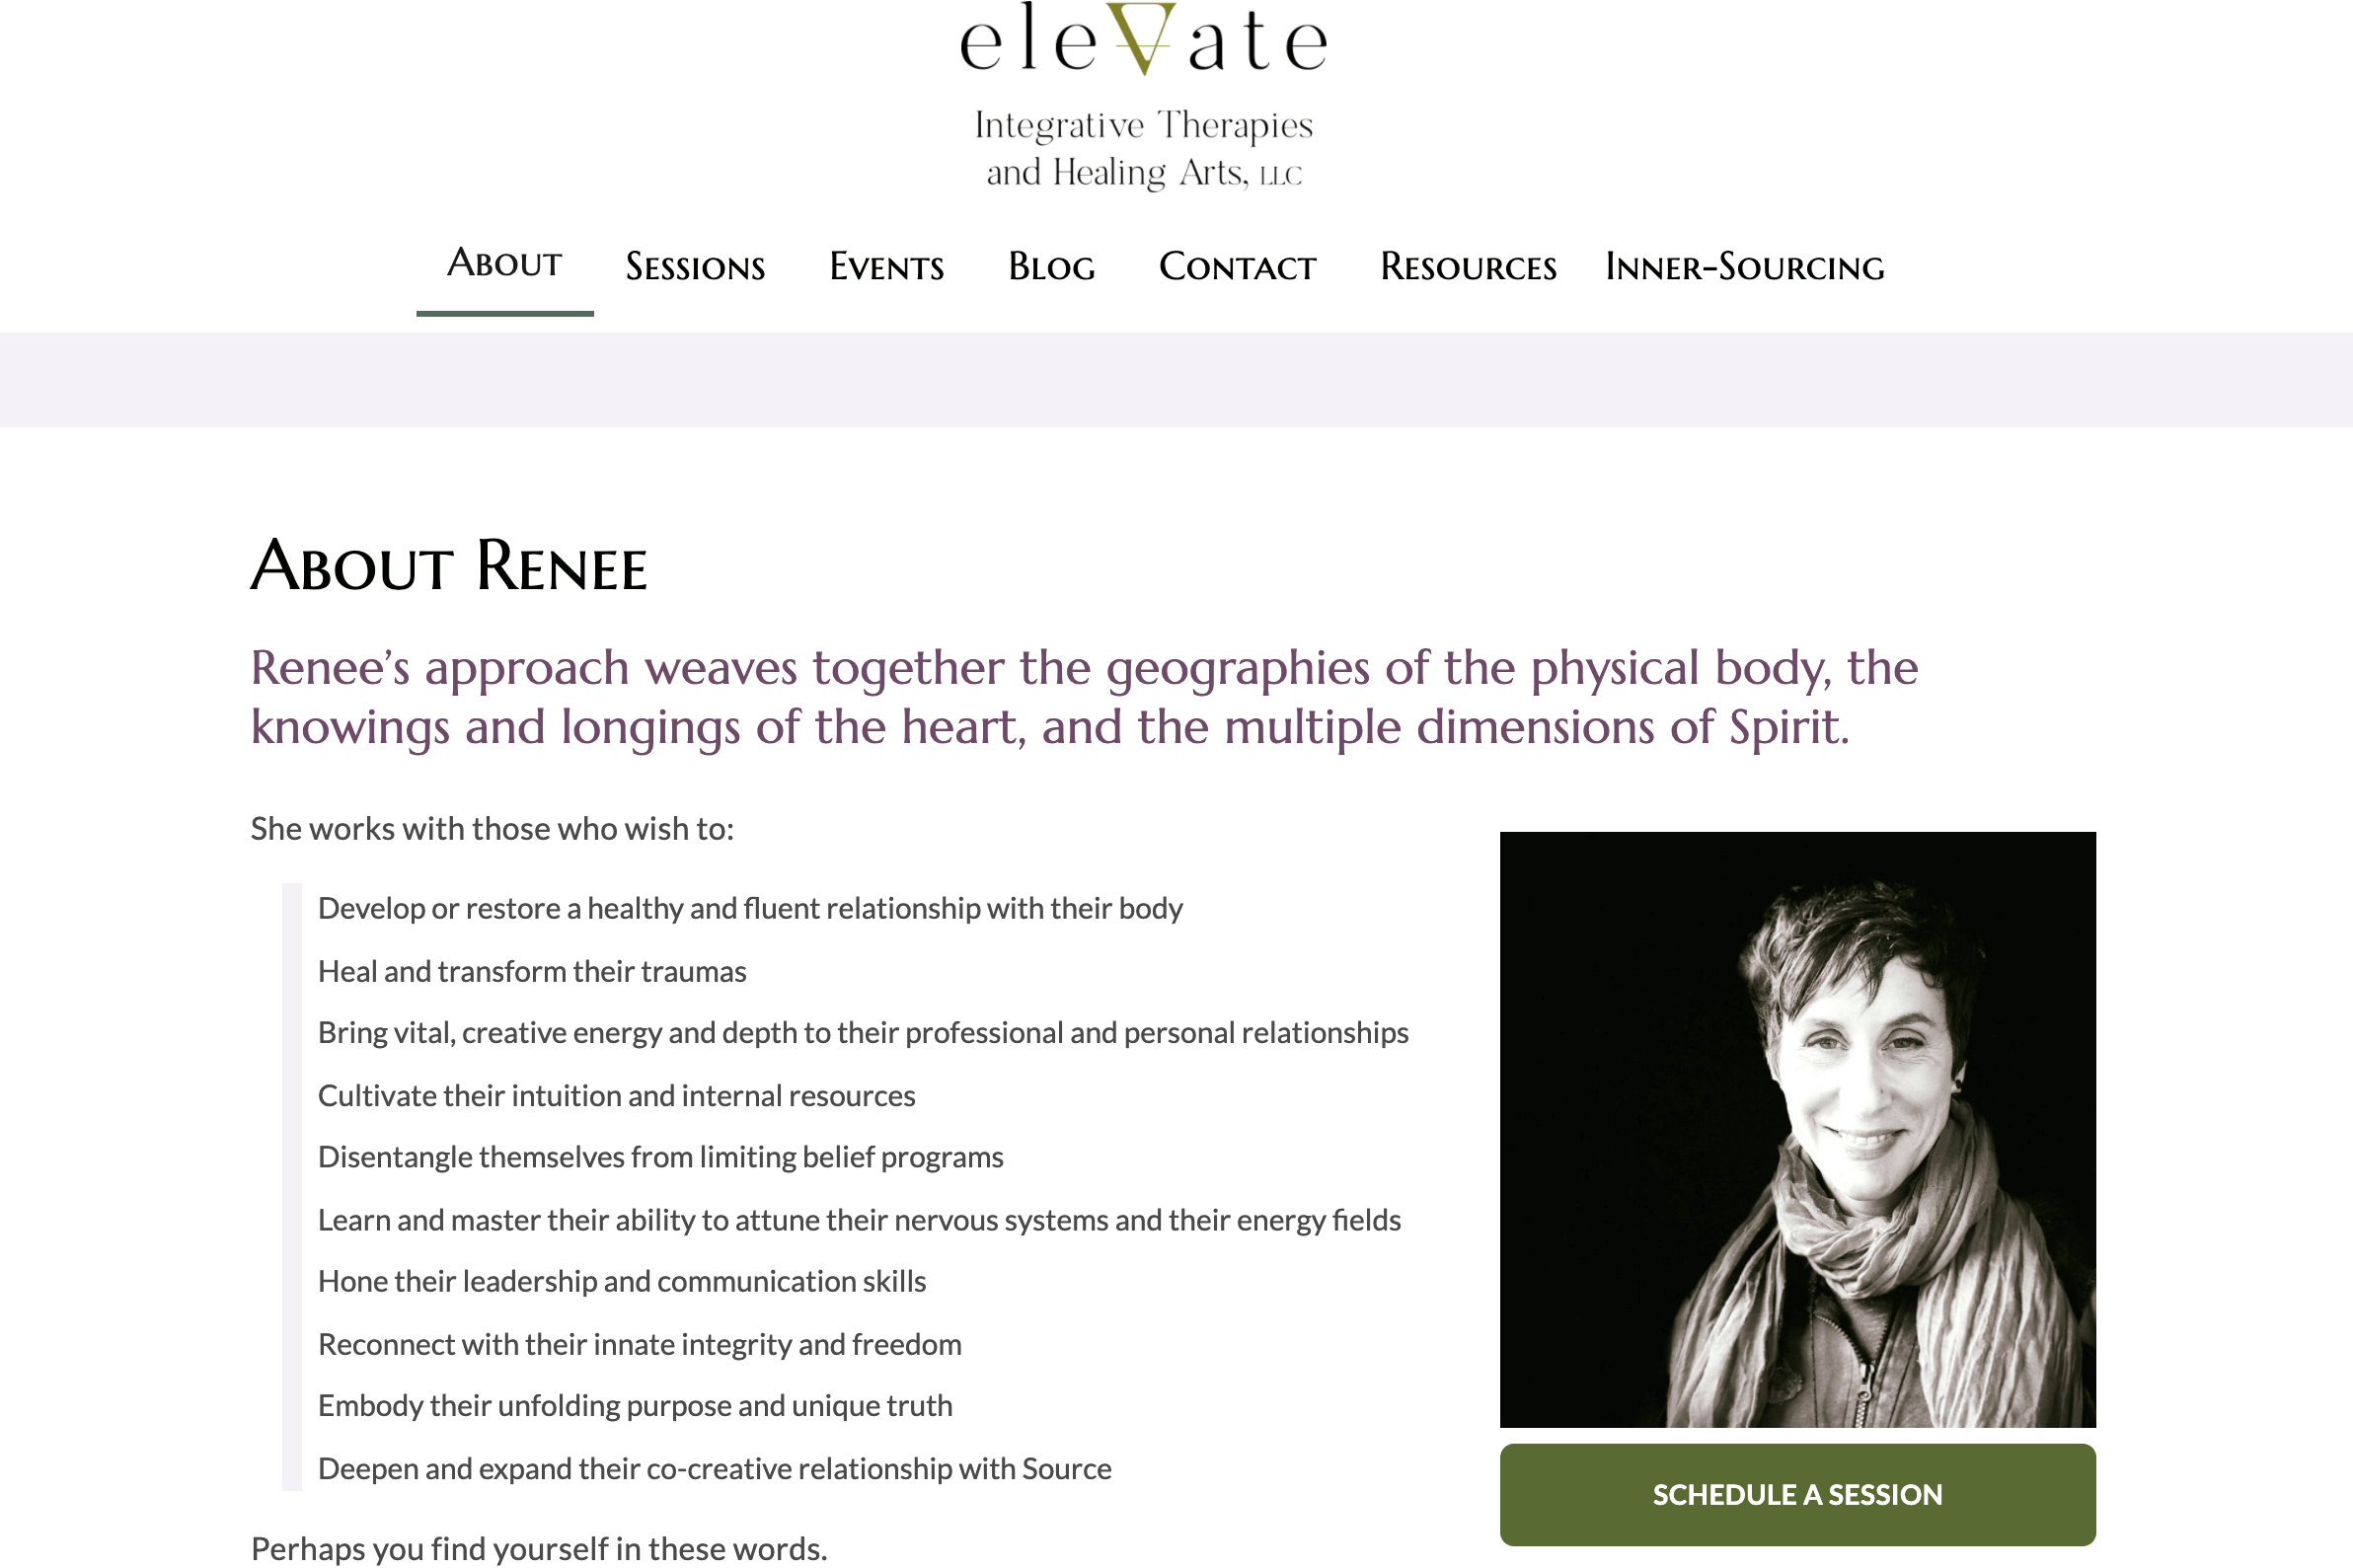 Elevate Healing Arts homepage